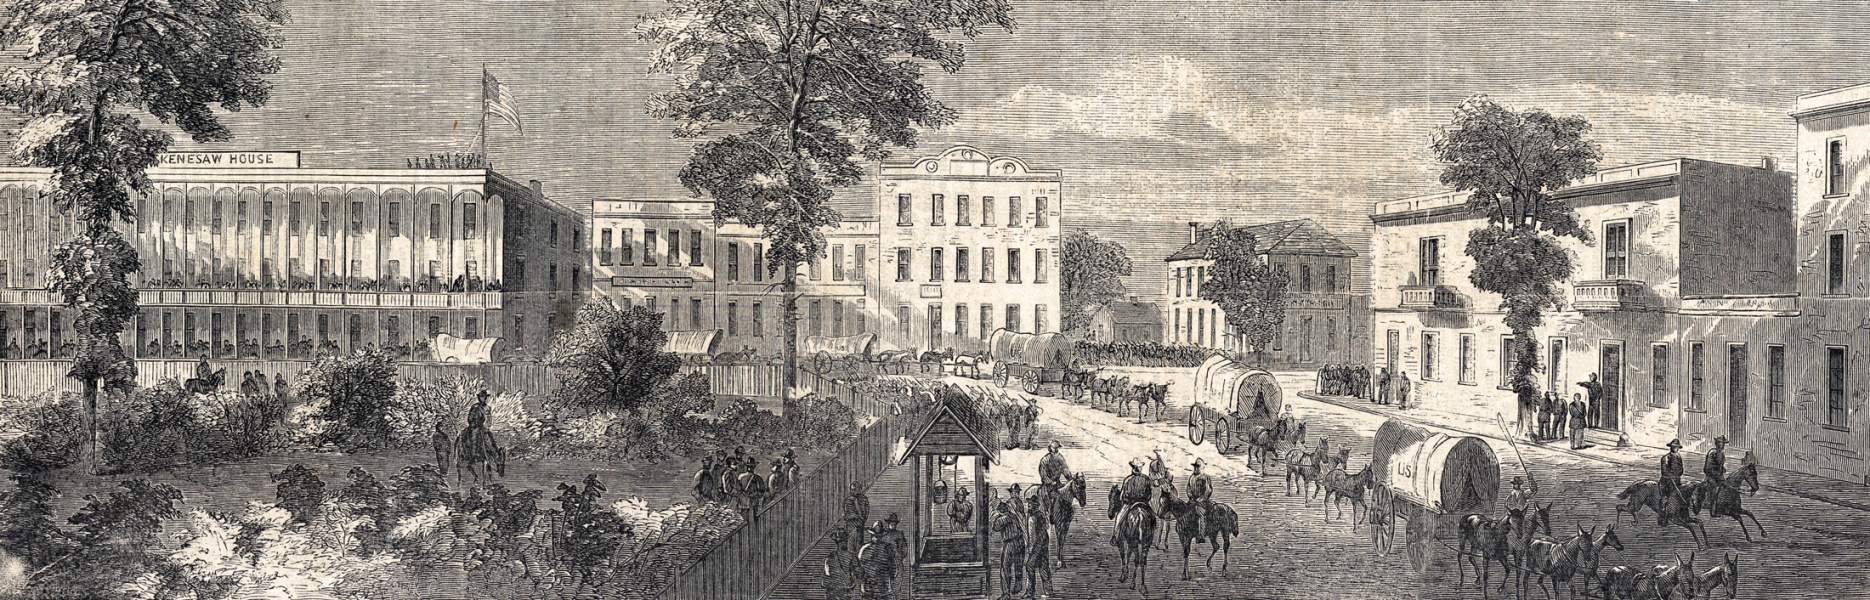 Public Square, Marietta, Georgia, July 1864, artist's impression, zoomable image